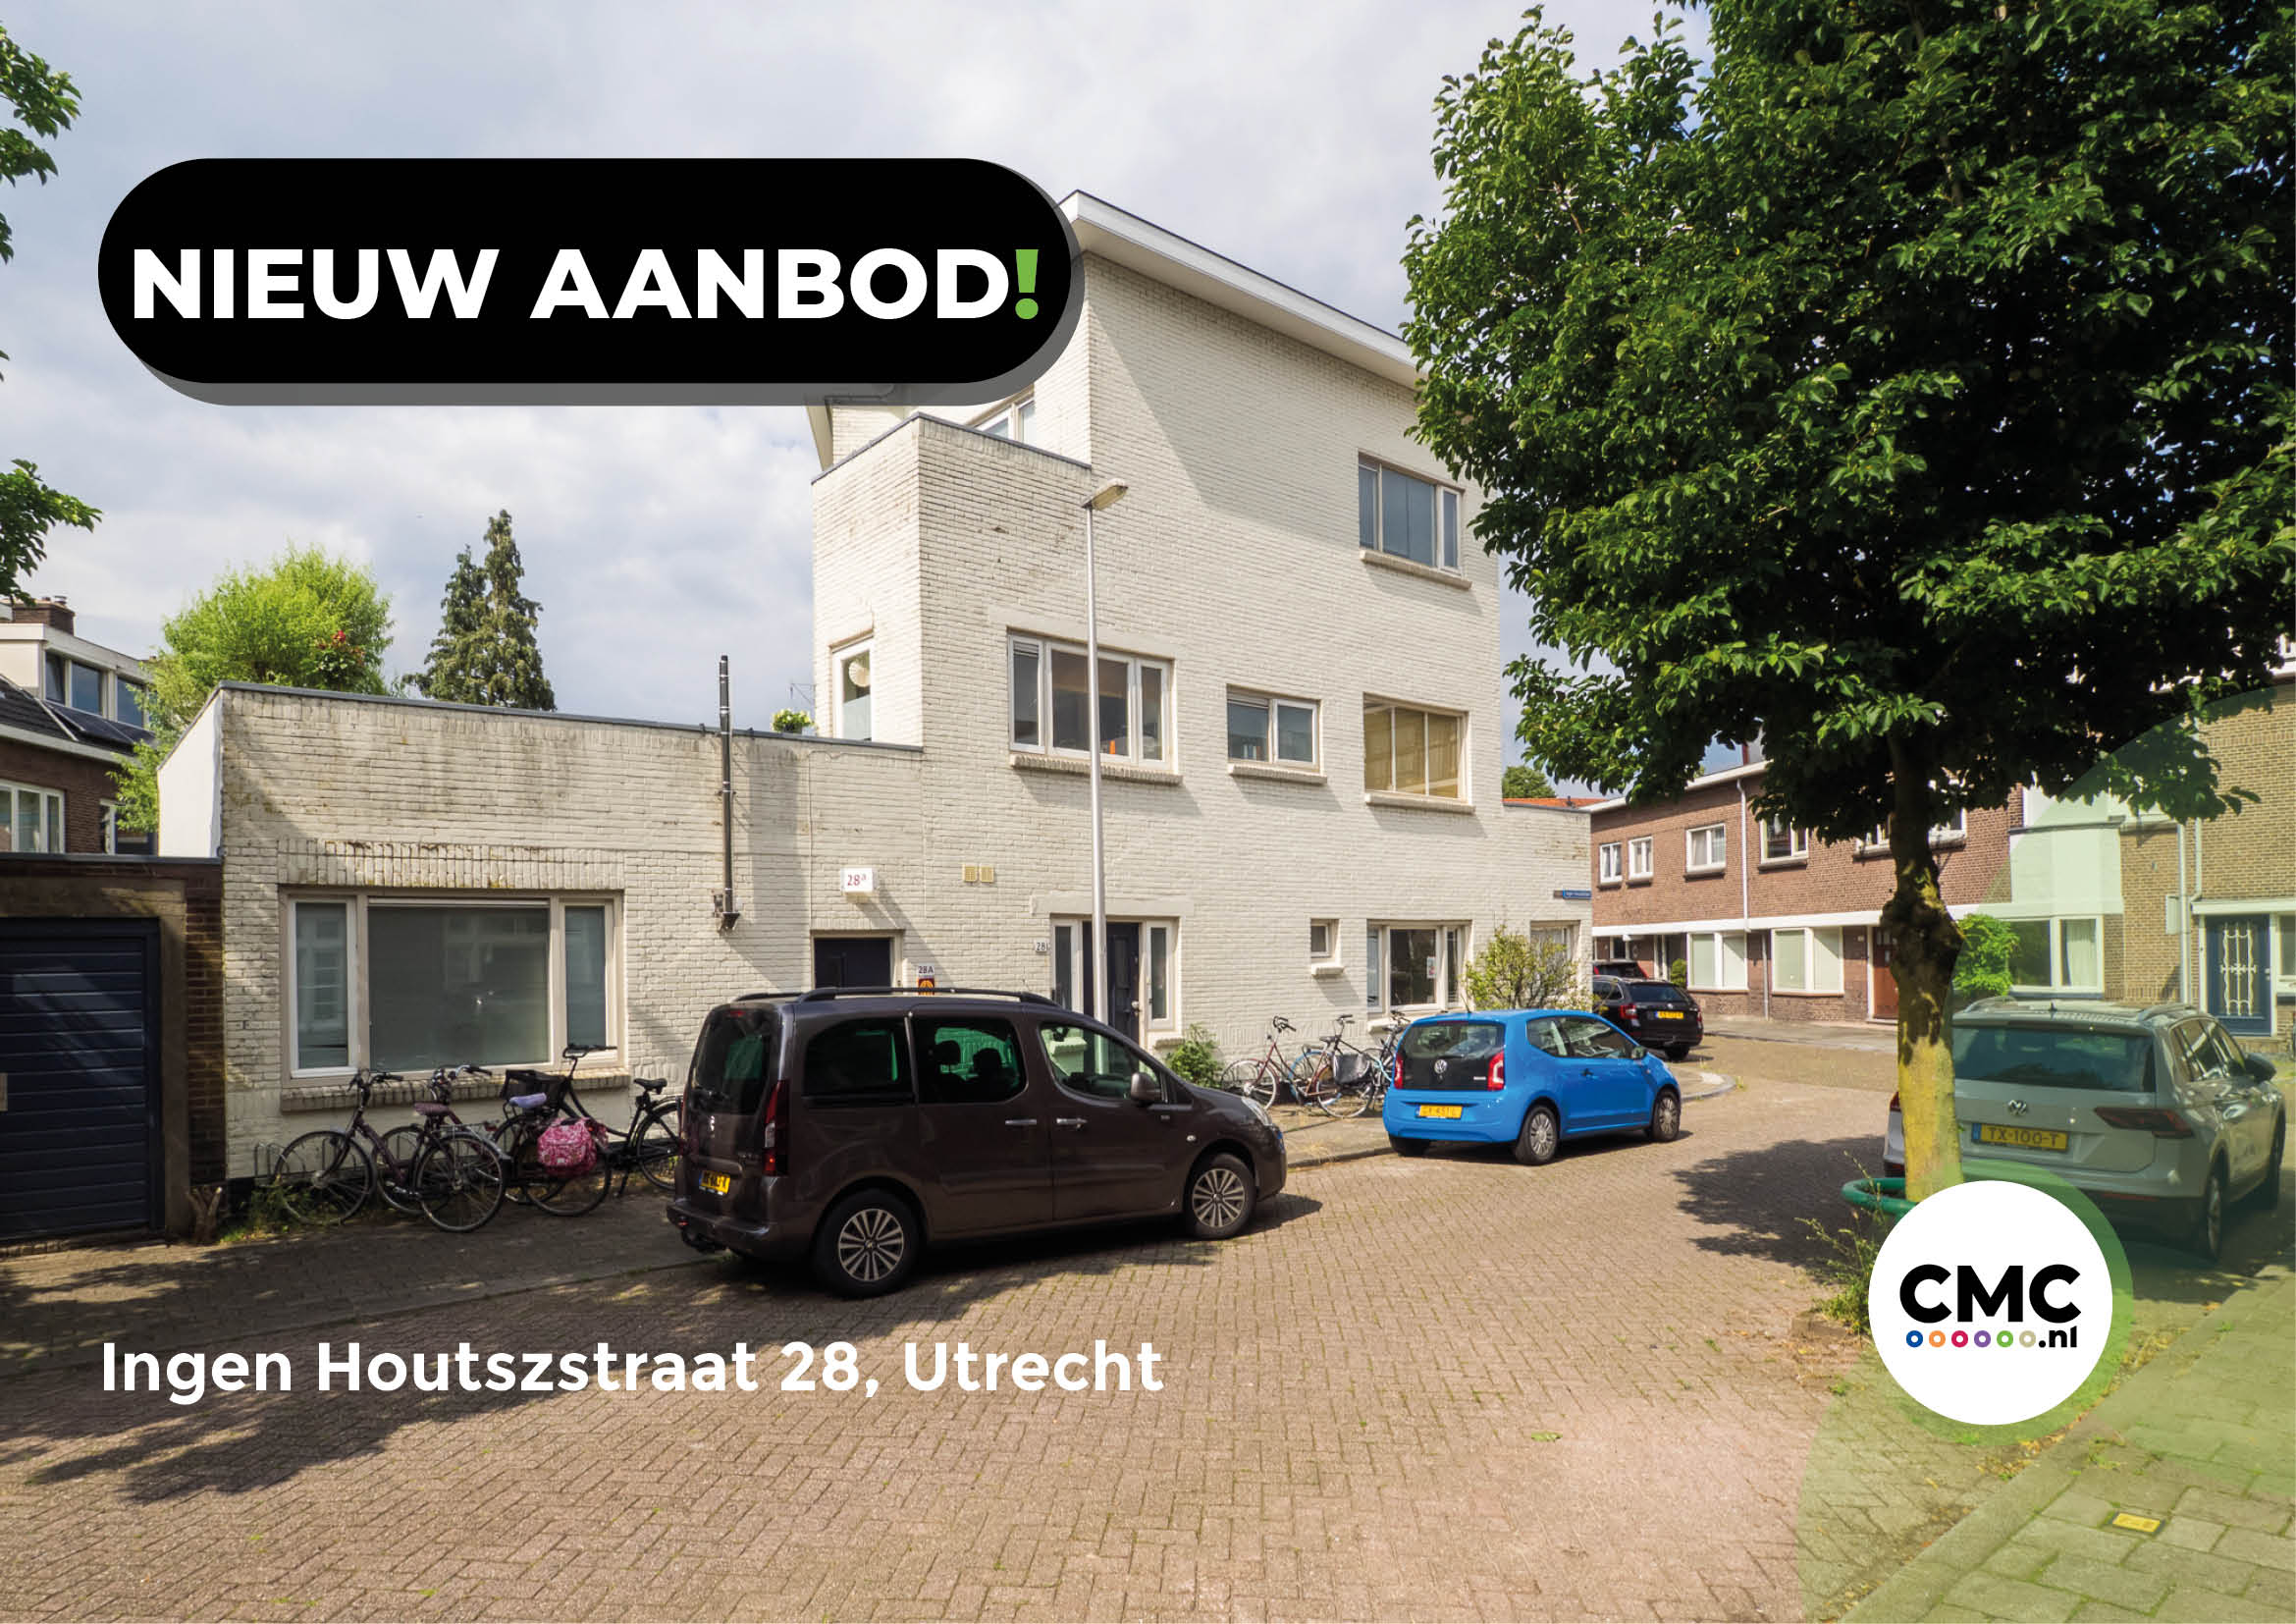 Zelfstandige kantoor-/praktijkruimte beschikbaar in de wijk Tuinwijk- Oost.